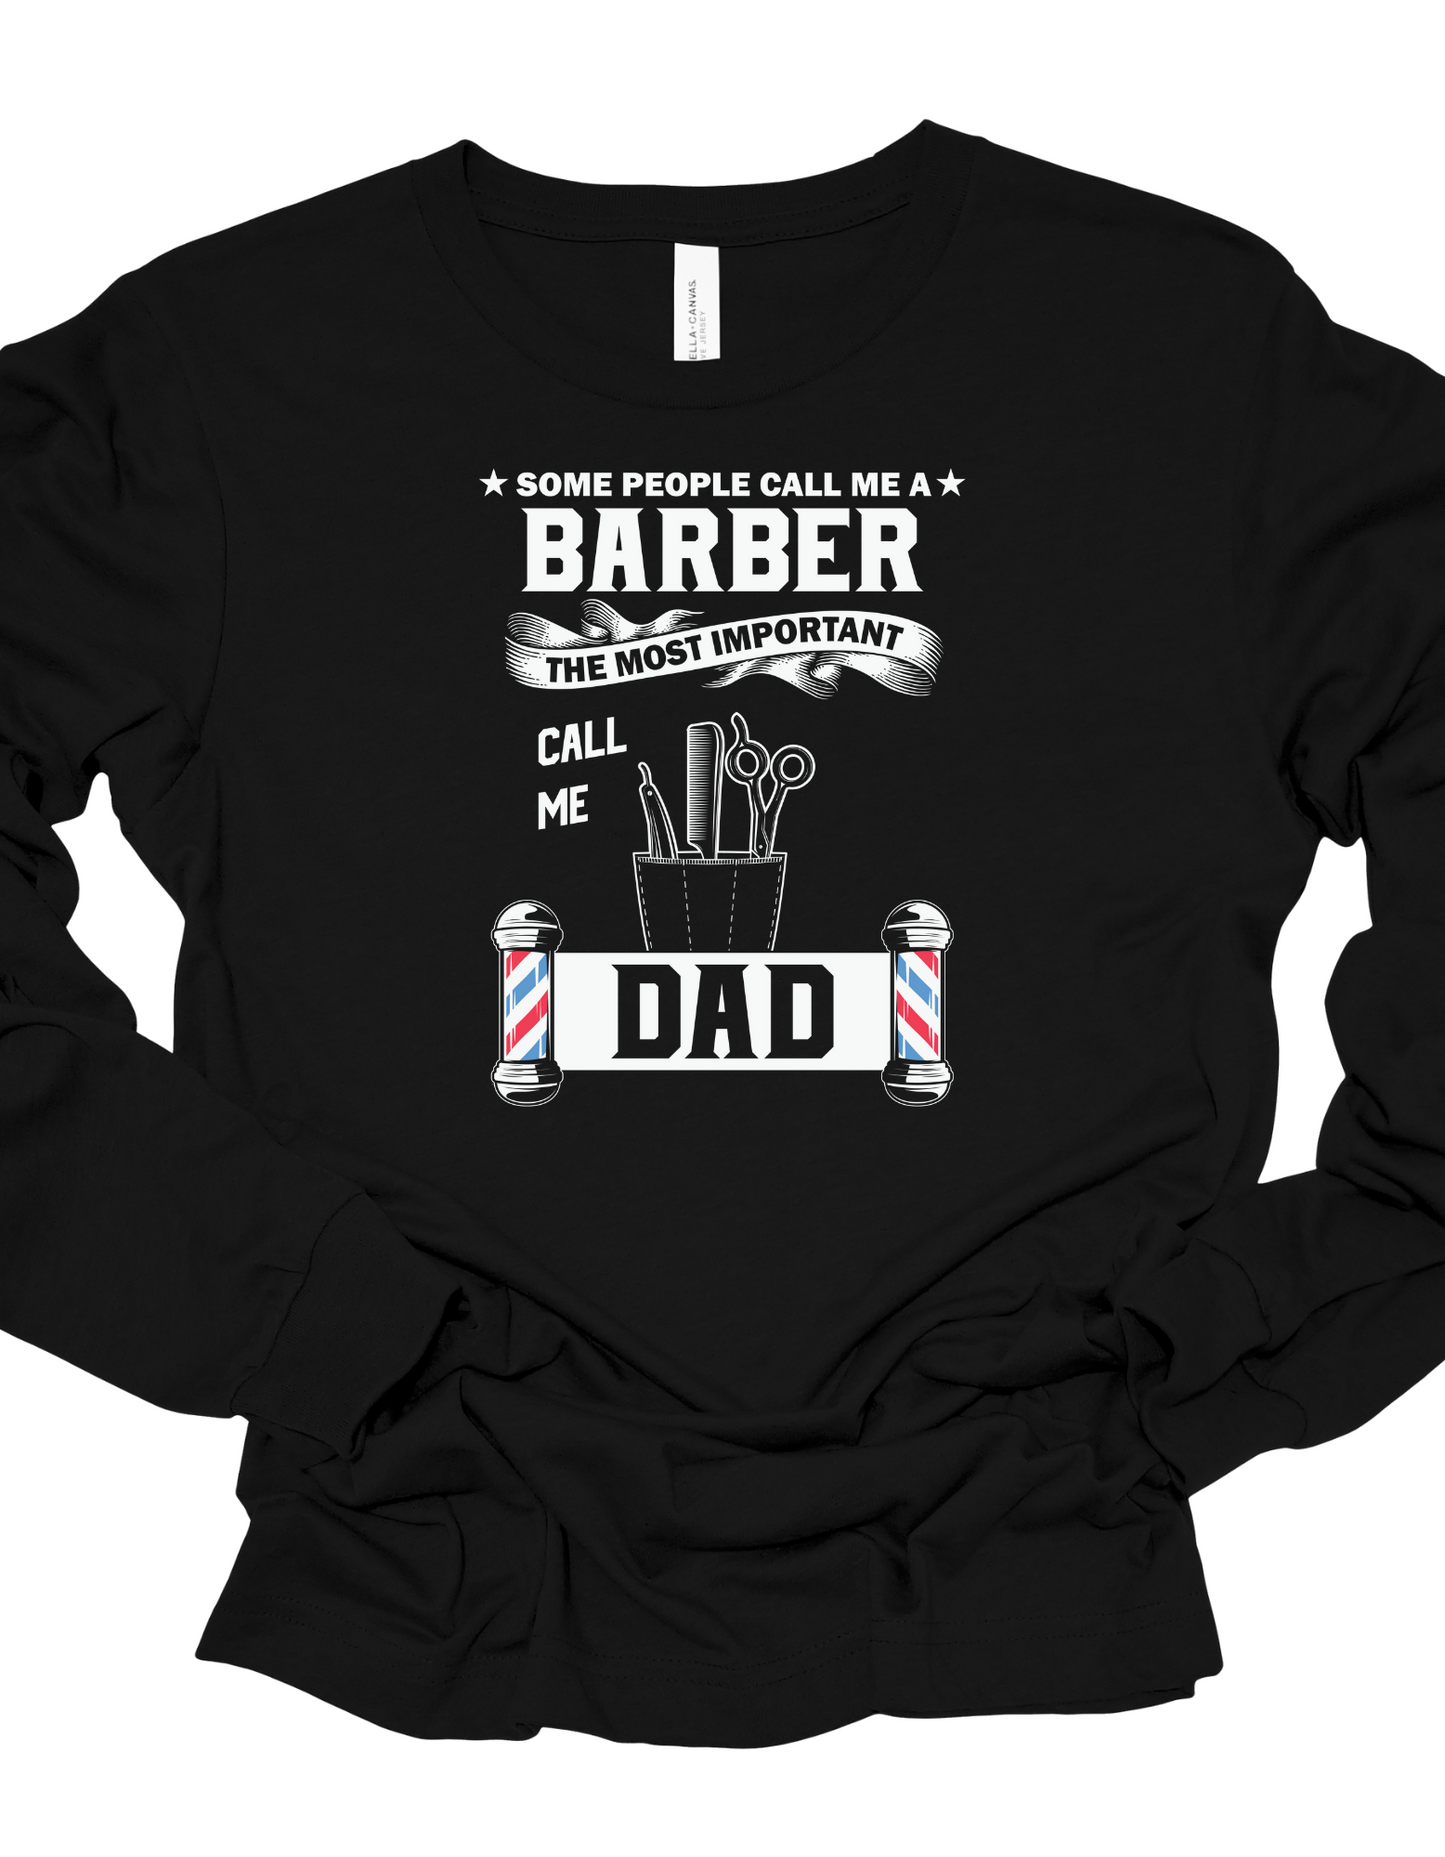 Call me Dad T-shirt